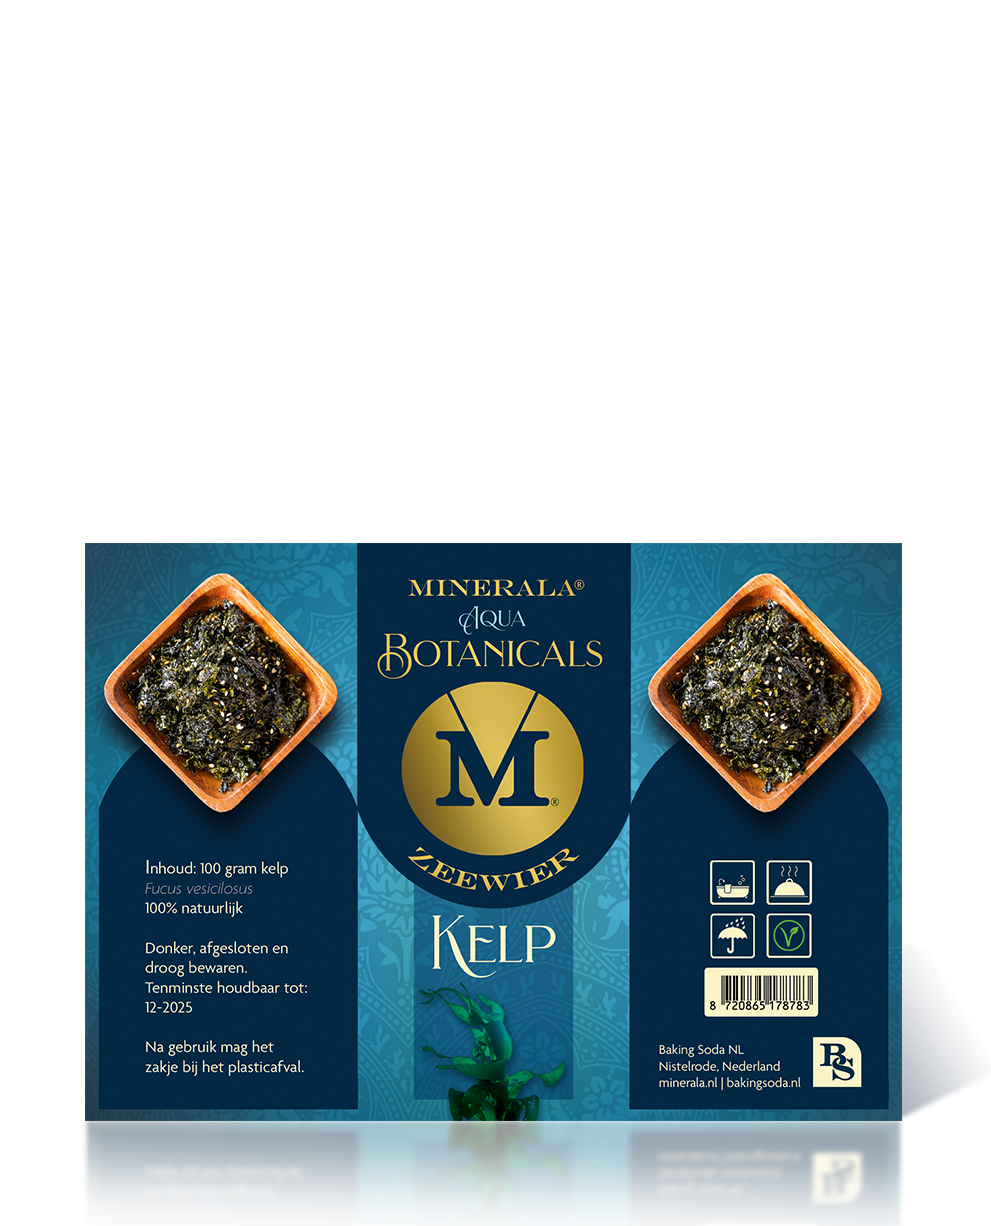 Minerala Botanicals kelp zeewier. Baking Soda NL